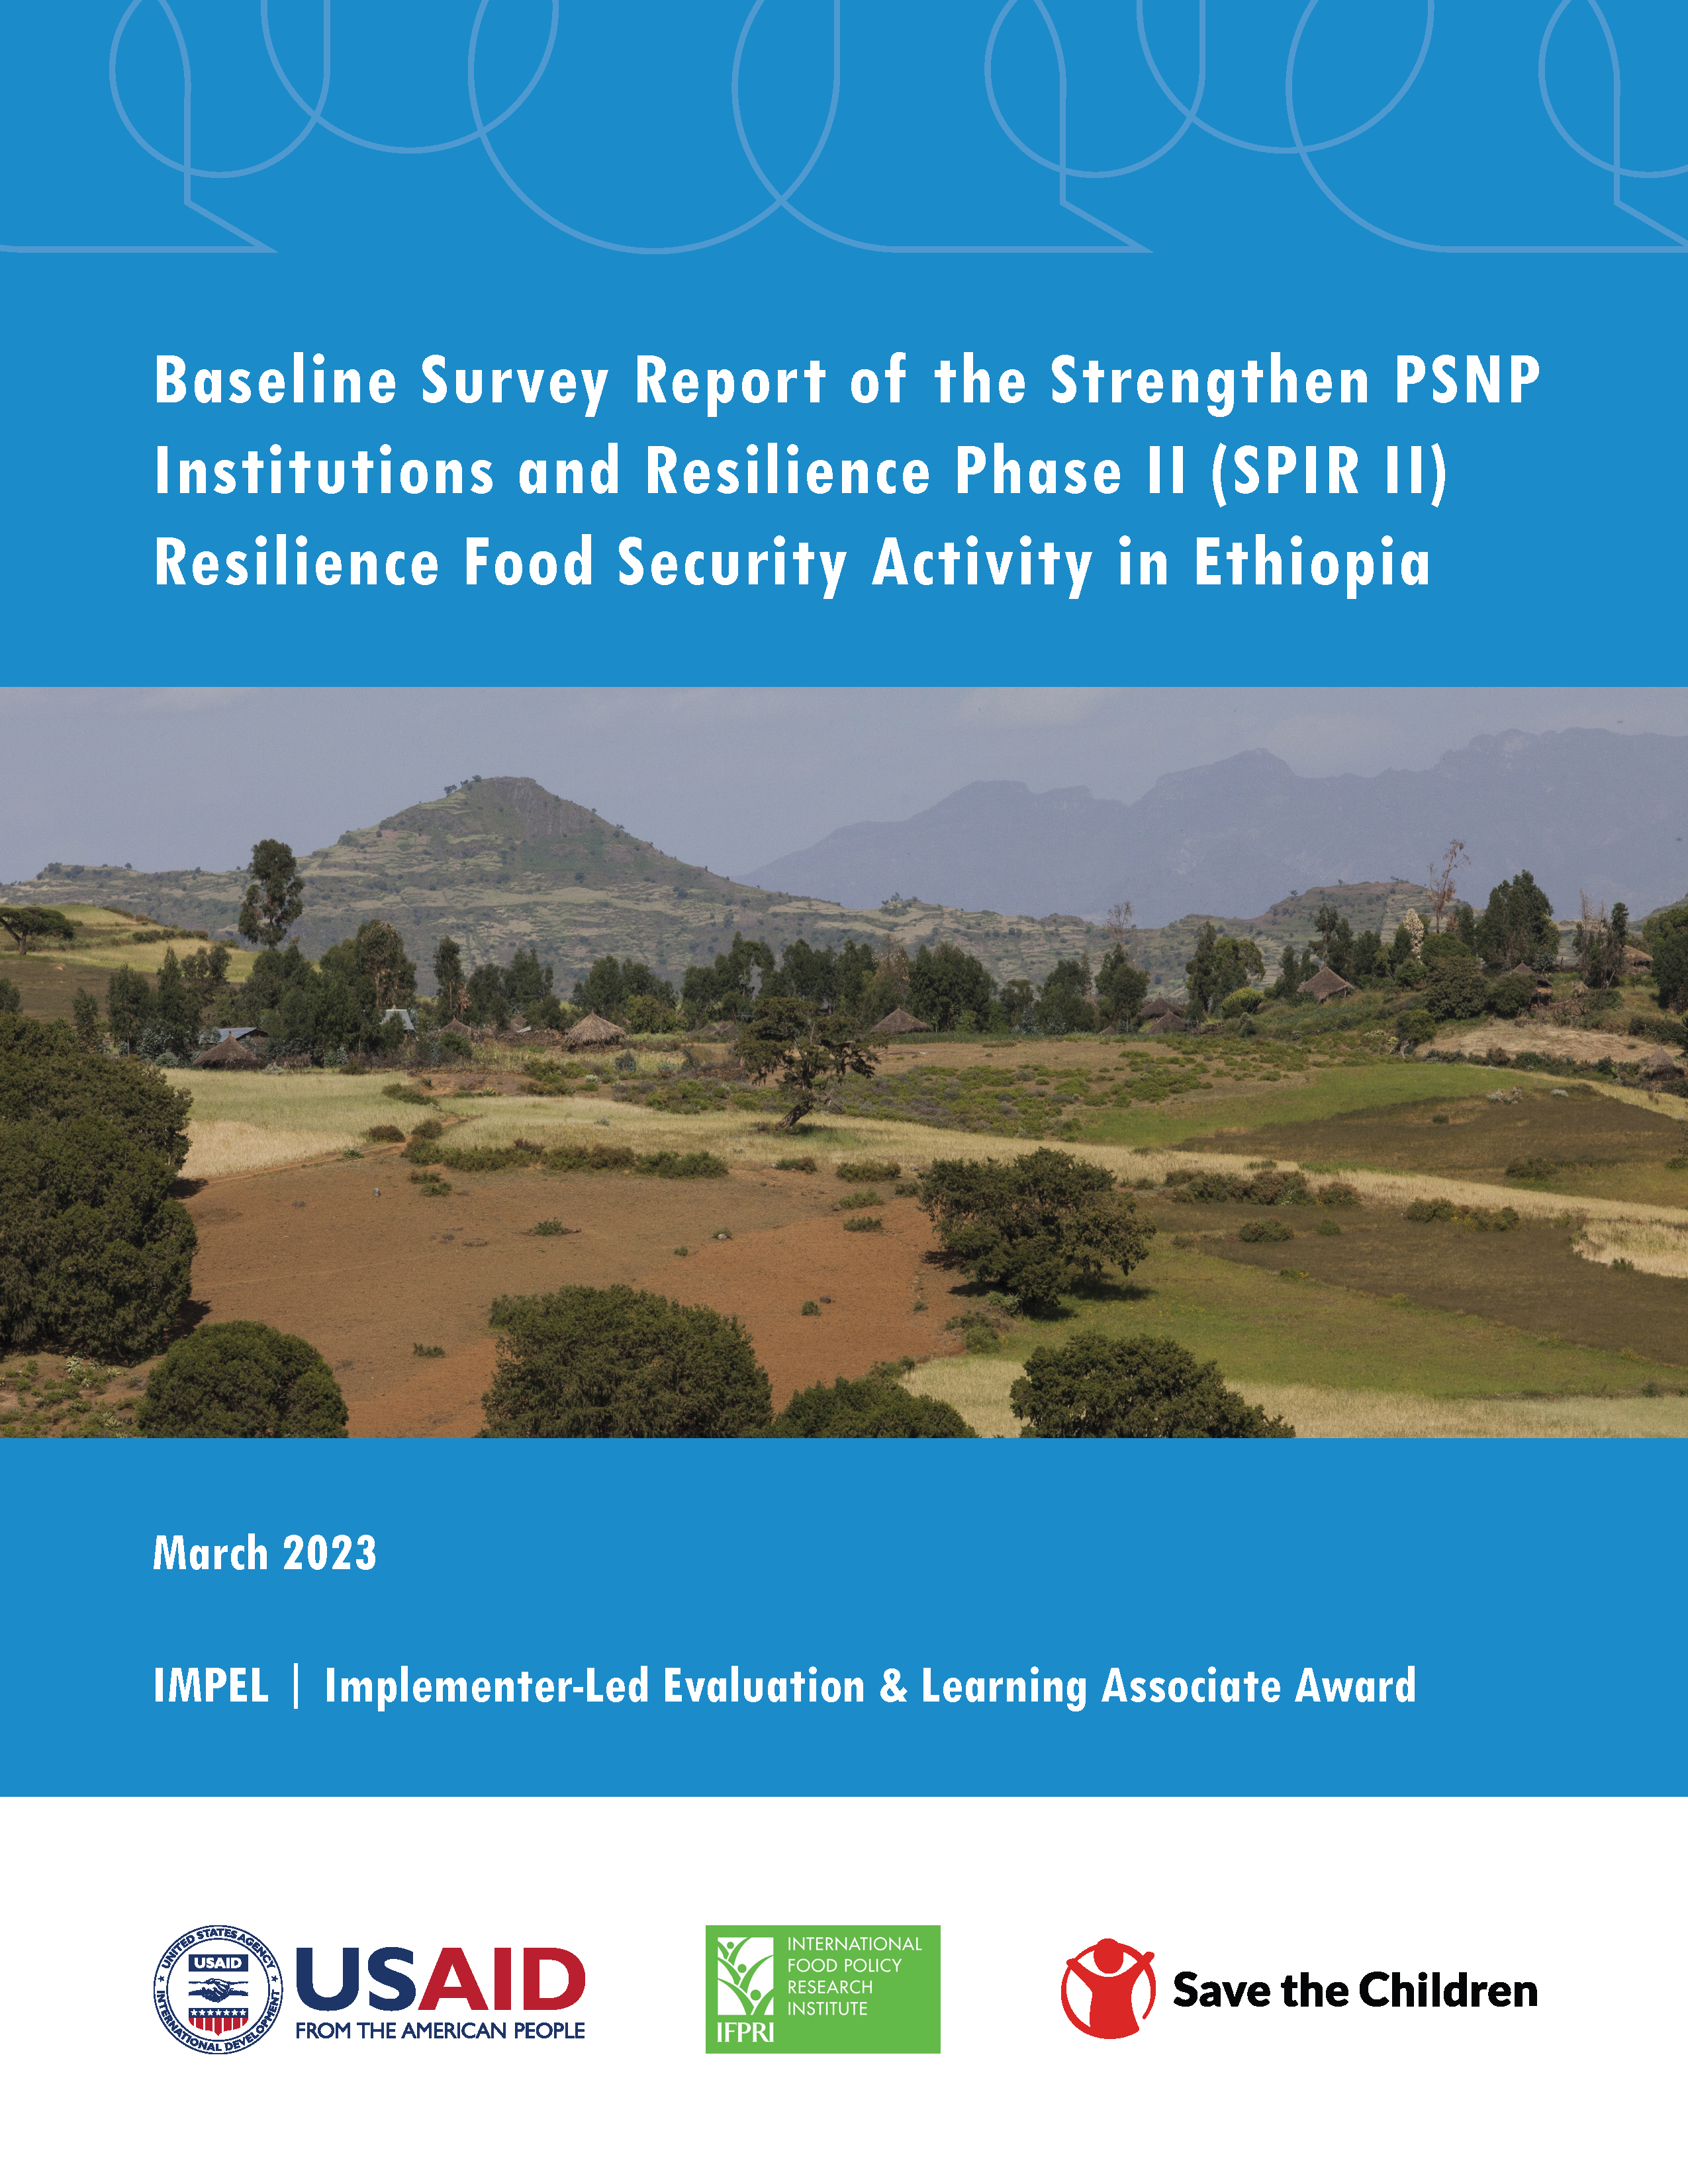 Couverture du rapport - Rapport d'enquête de base sur l'activité de sécurité alimentaire de la résilience de la phase II du renforcement des institutions et de la résilience du PSNP (SPIR II) en Éthiopie